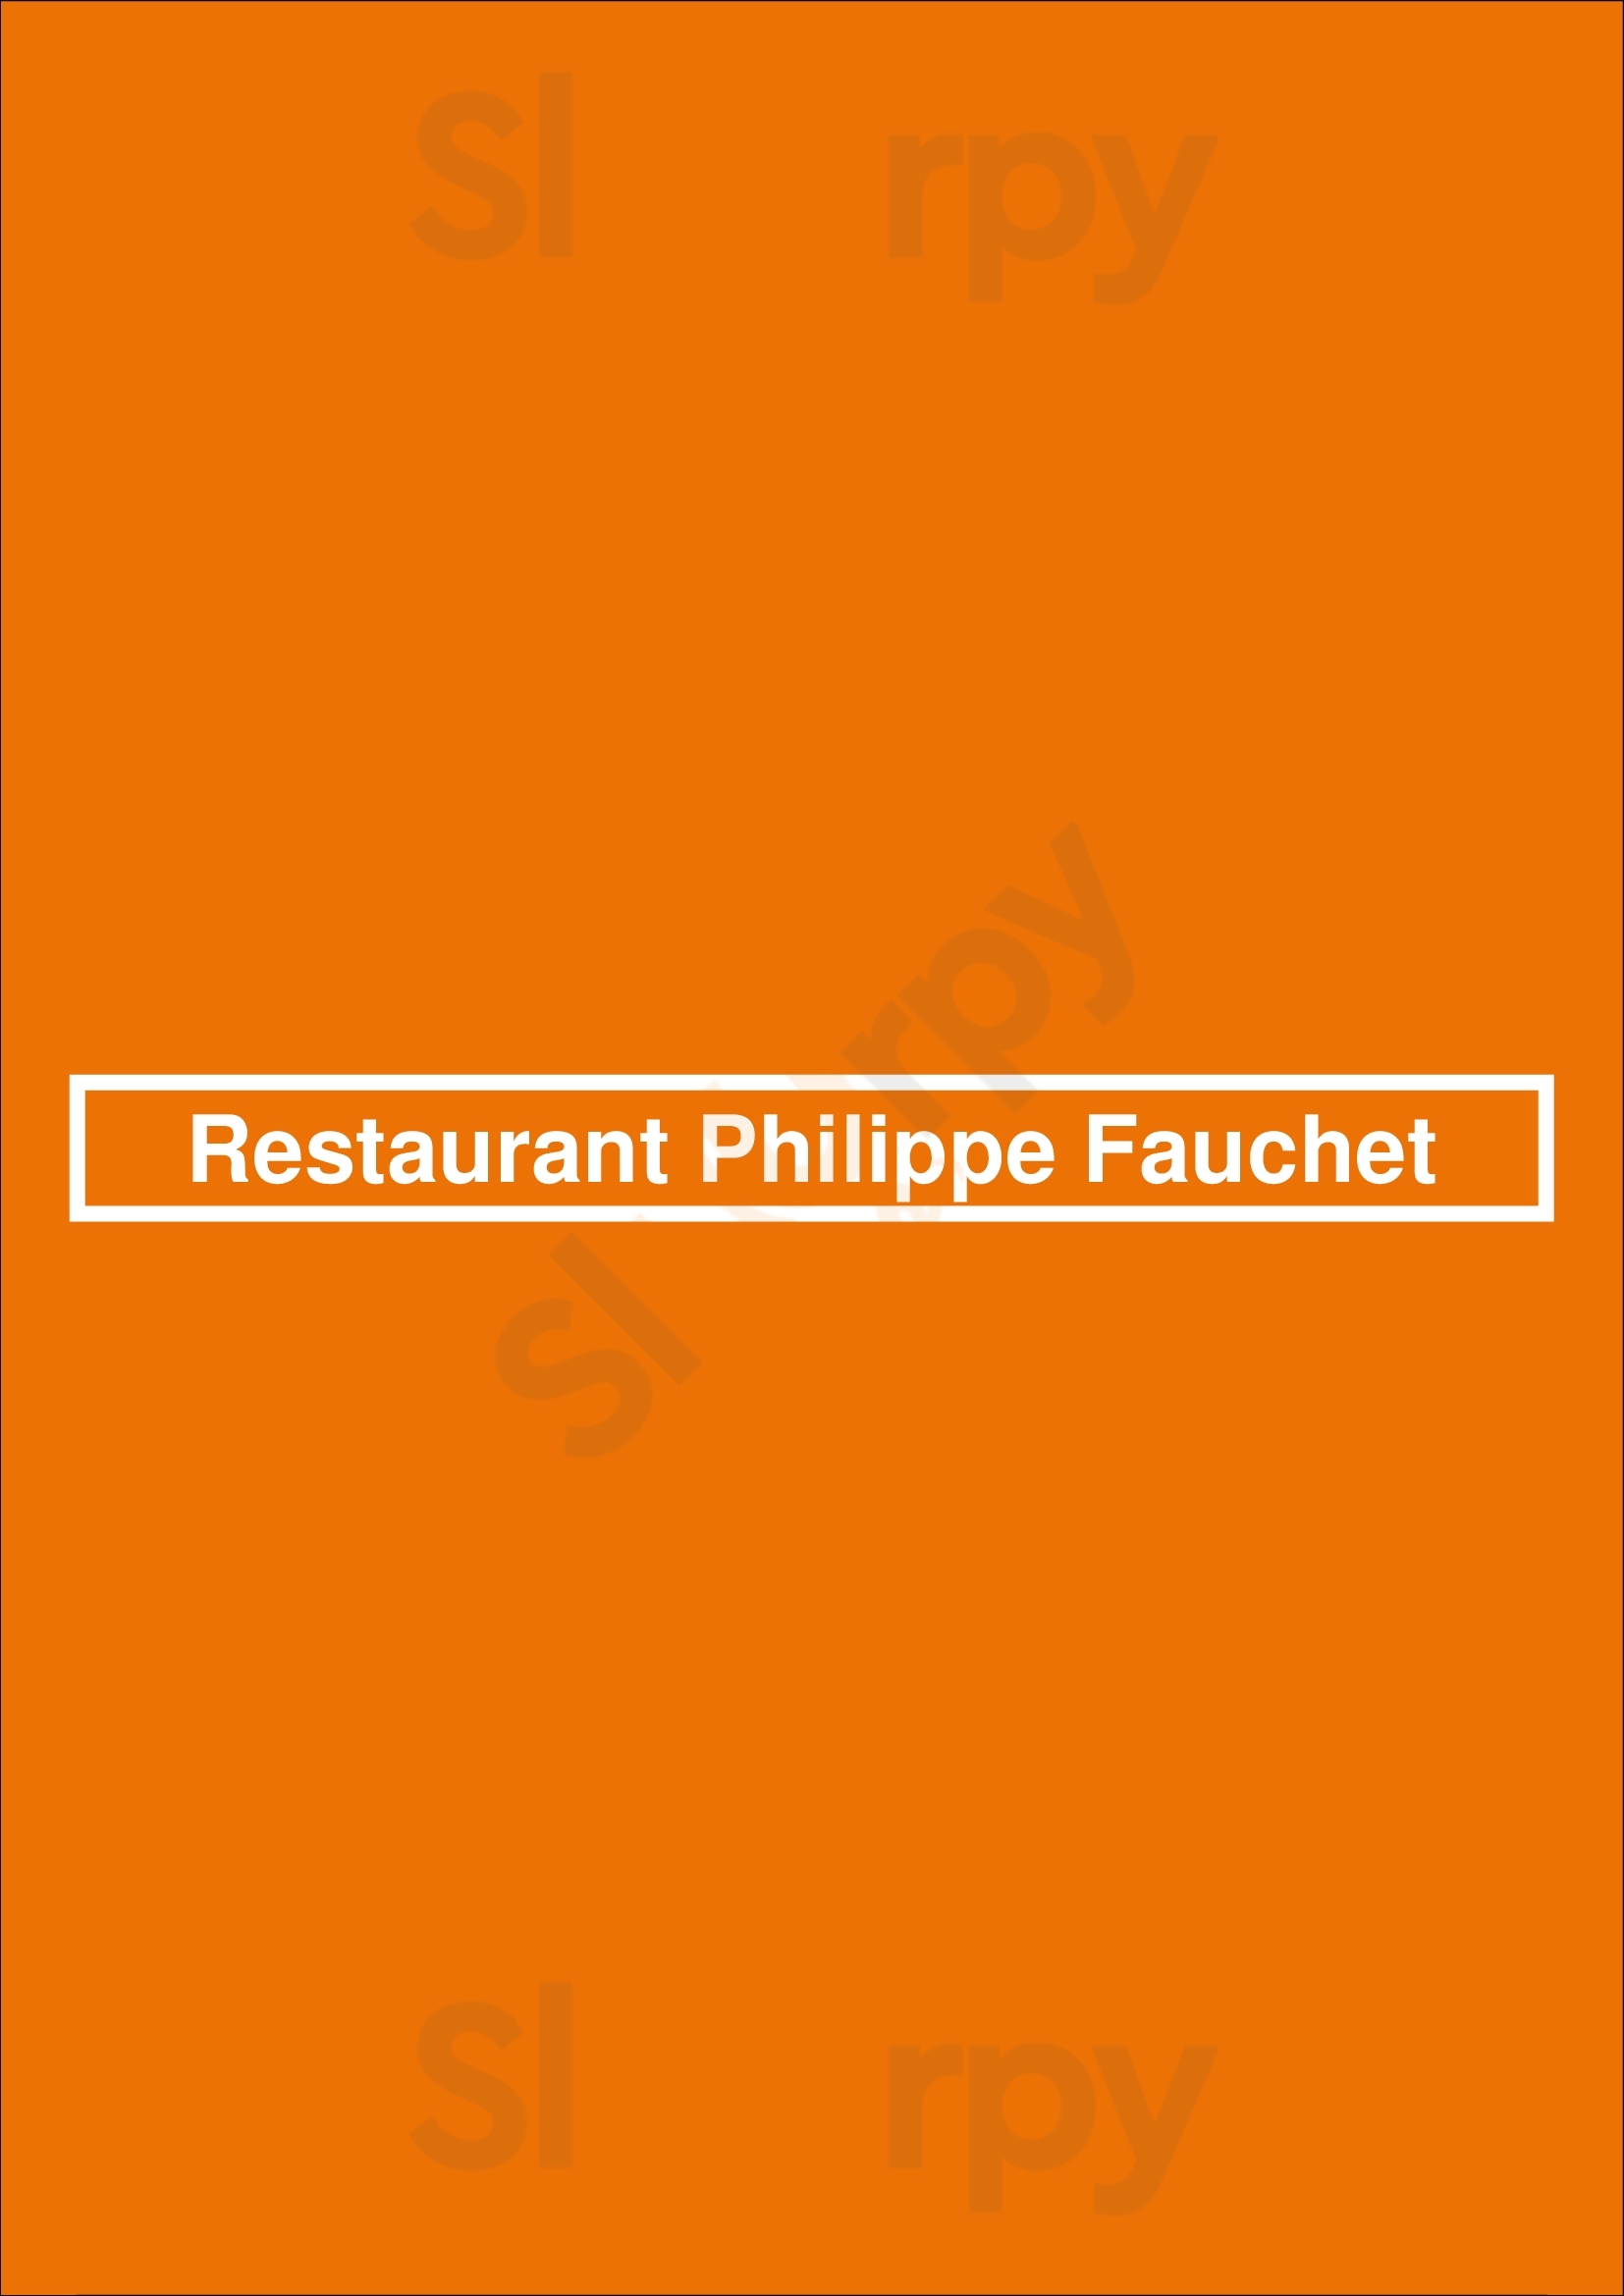 Restaurant Philippe Fauchet Saint-Georges-sur-Meuse Menu - 1